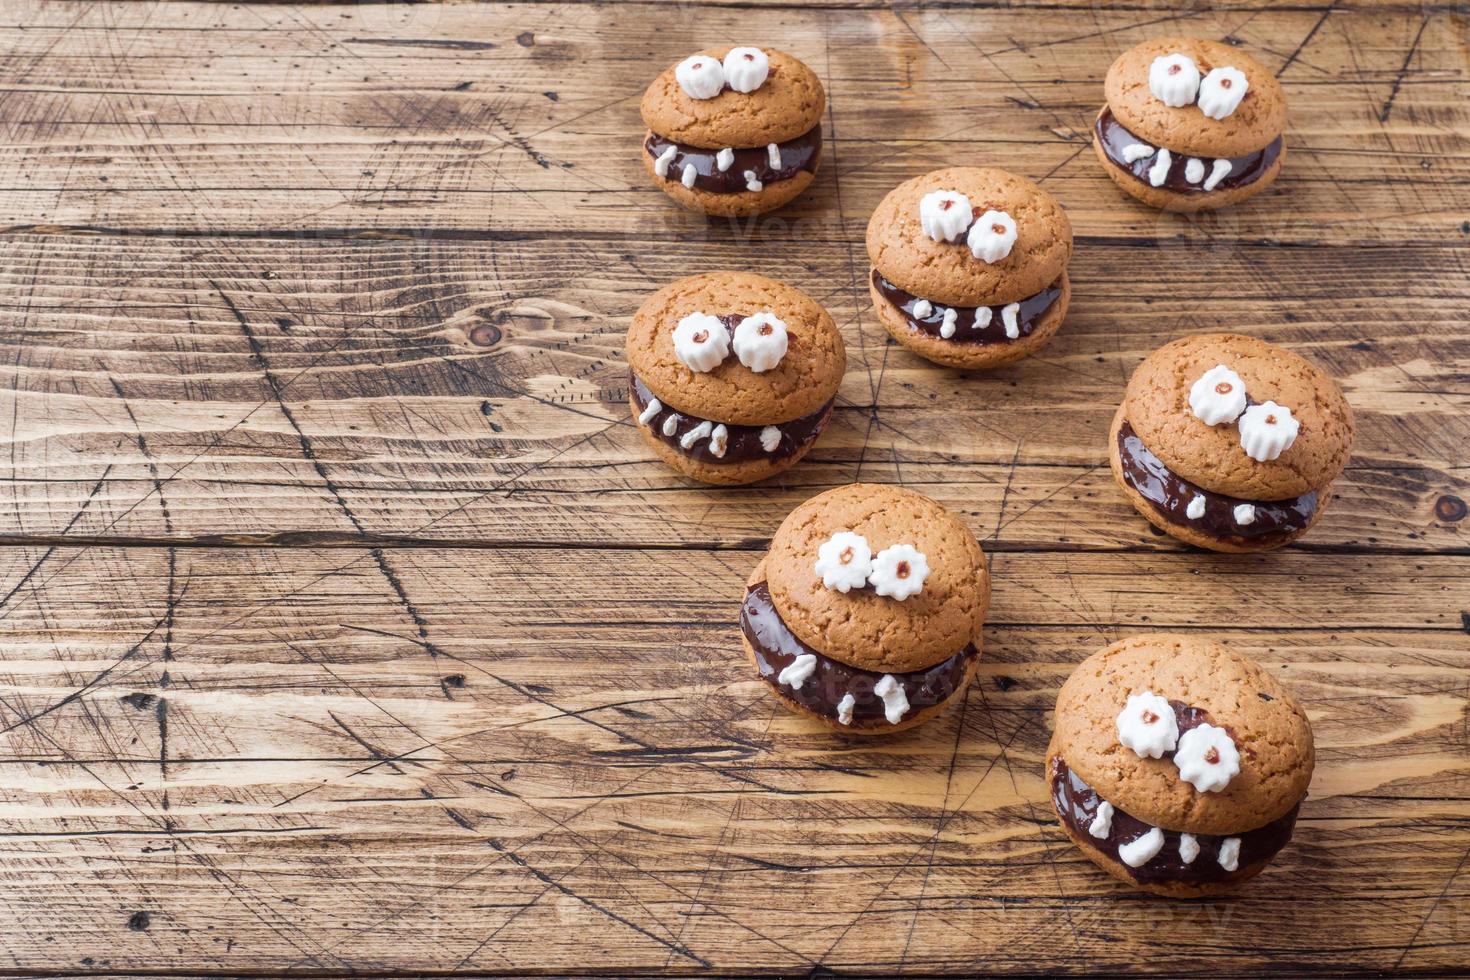 galletas con pasta de chocolate en forma de monstruos para halloween foto